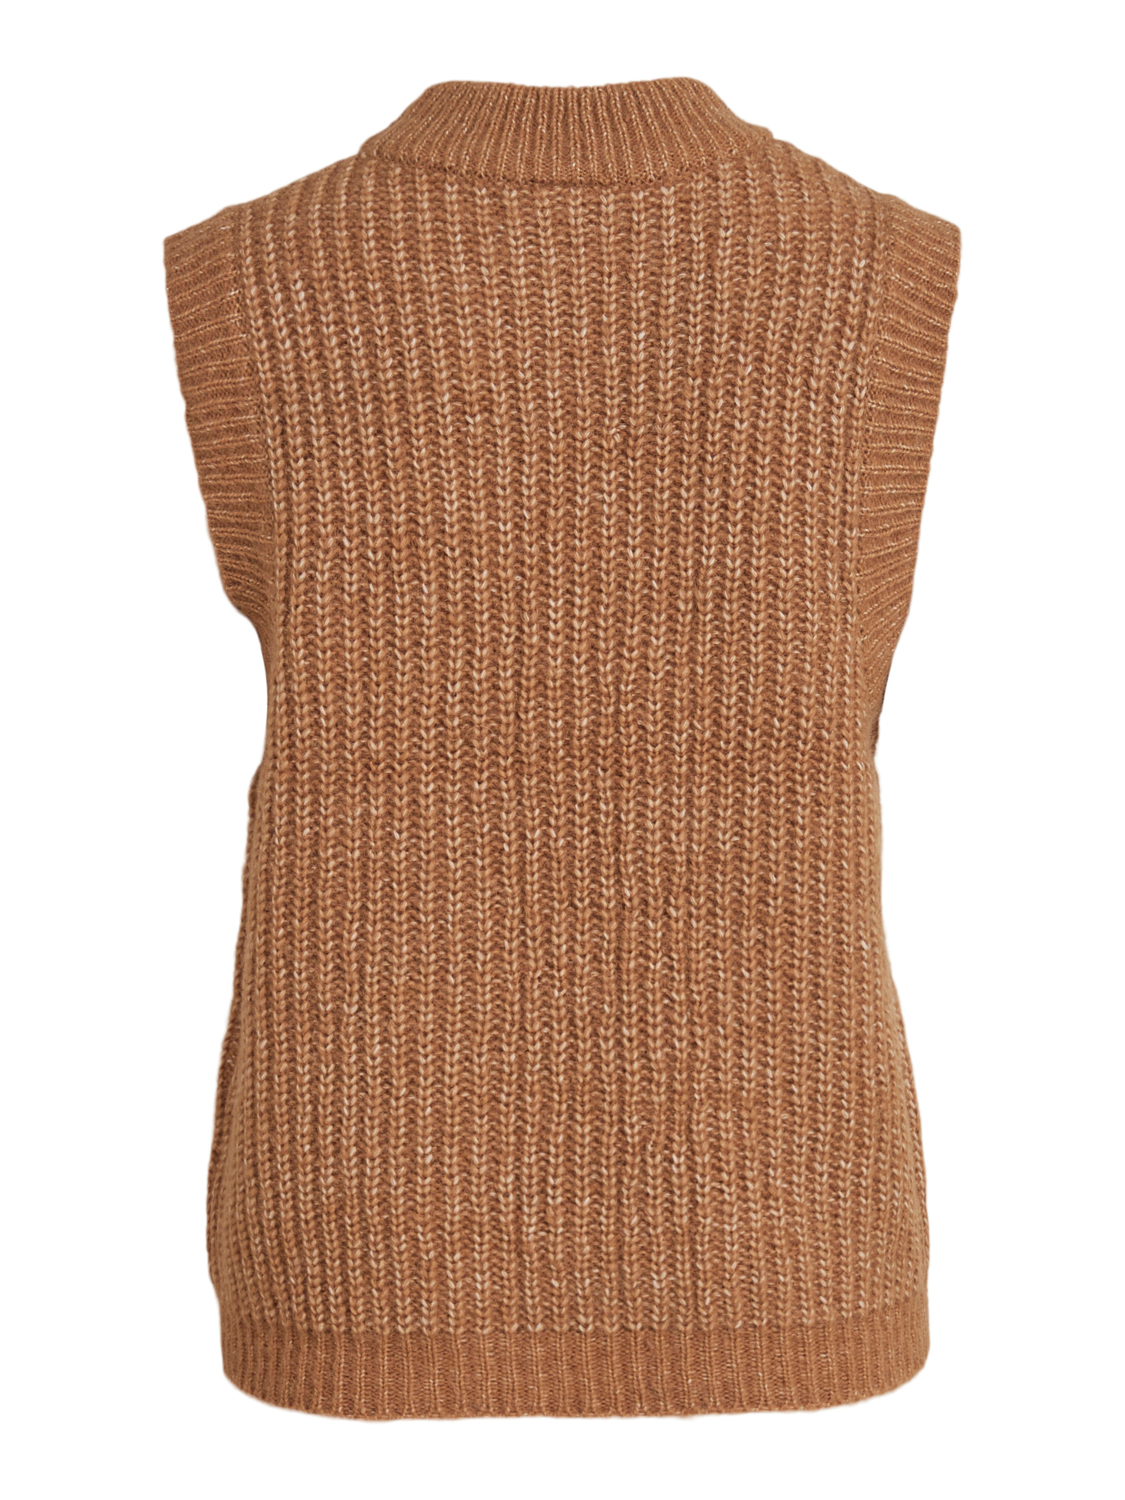 Odzież Kobiety VILA Sweter Nola w kolorze Karmelowym 